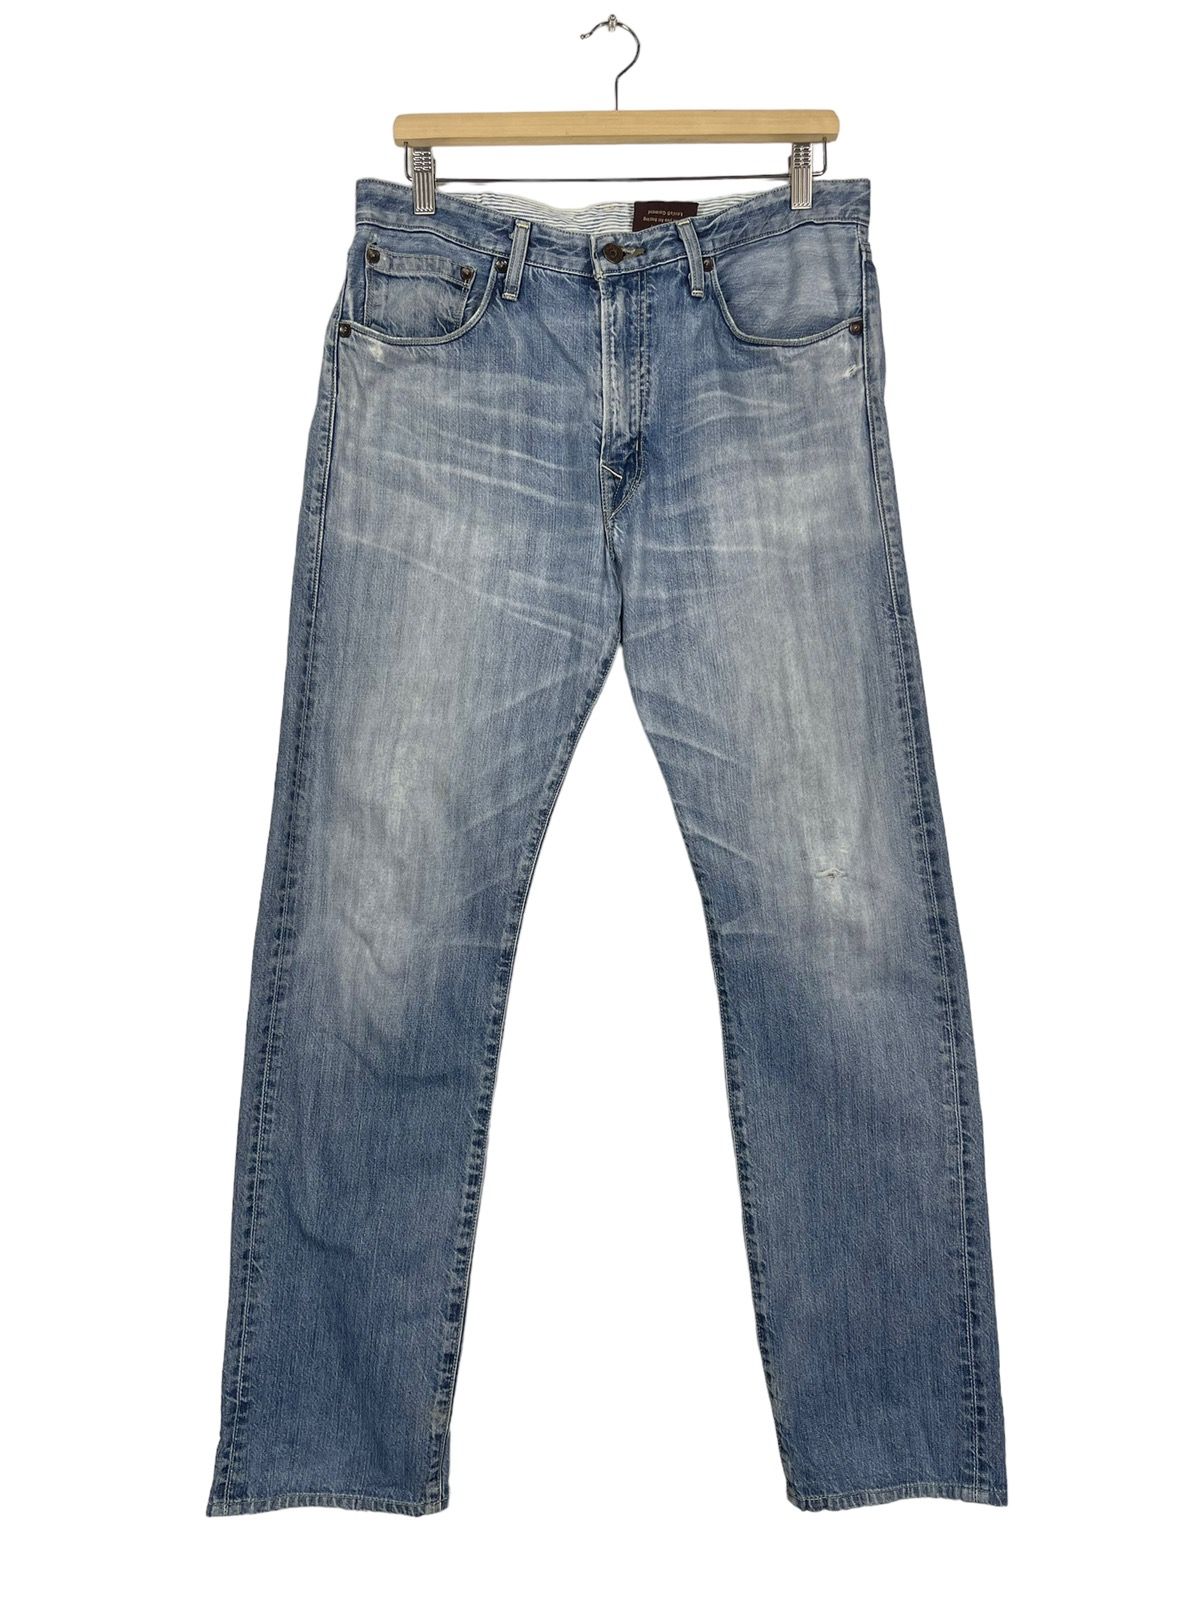 Vintage Levis Classic Lot 202 Jeans - 1